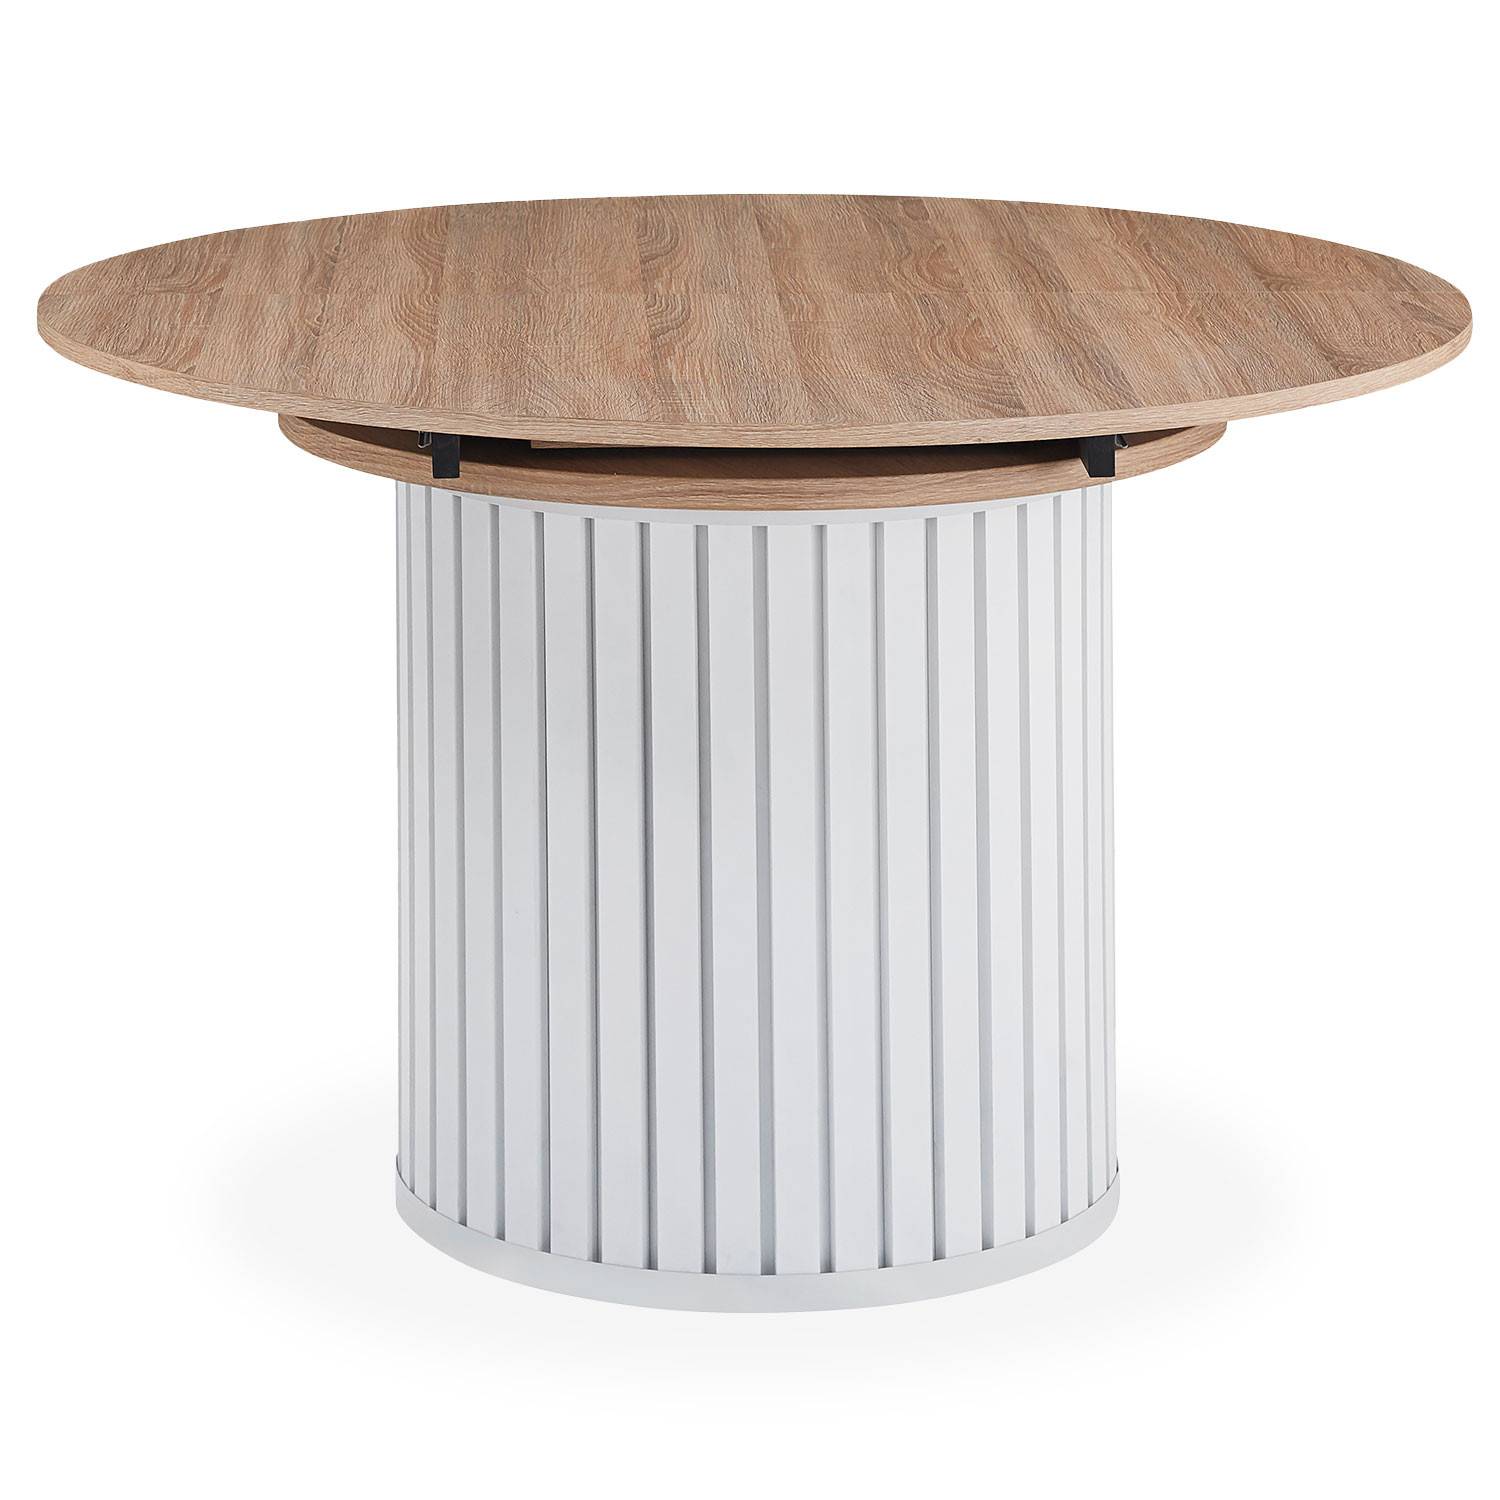 Burkina 120-160cm ronde uitschuifbare tafel met centrale kolomvoet in Sonoma hout en wit